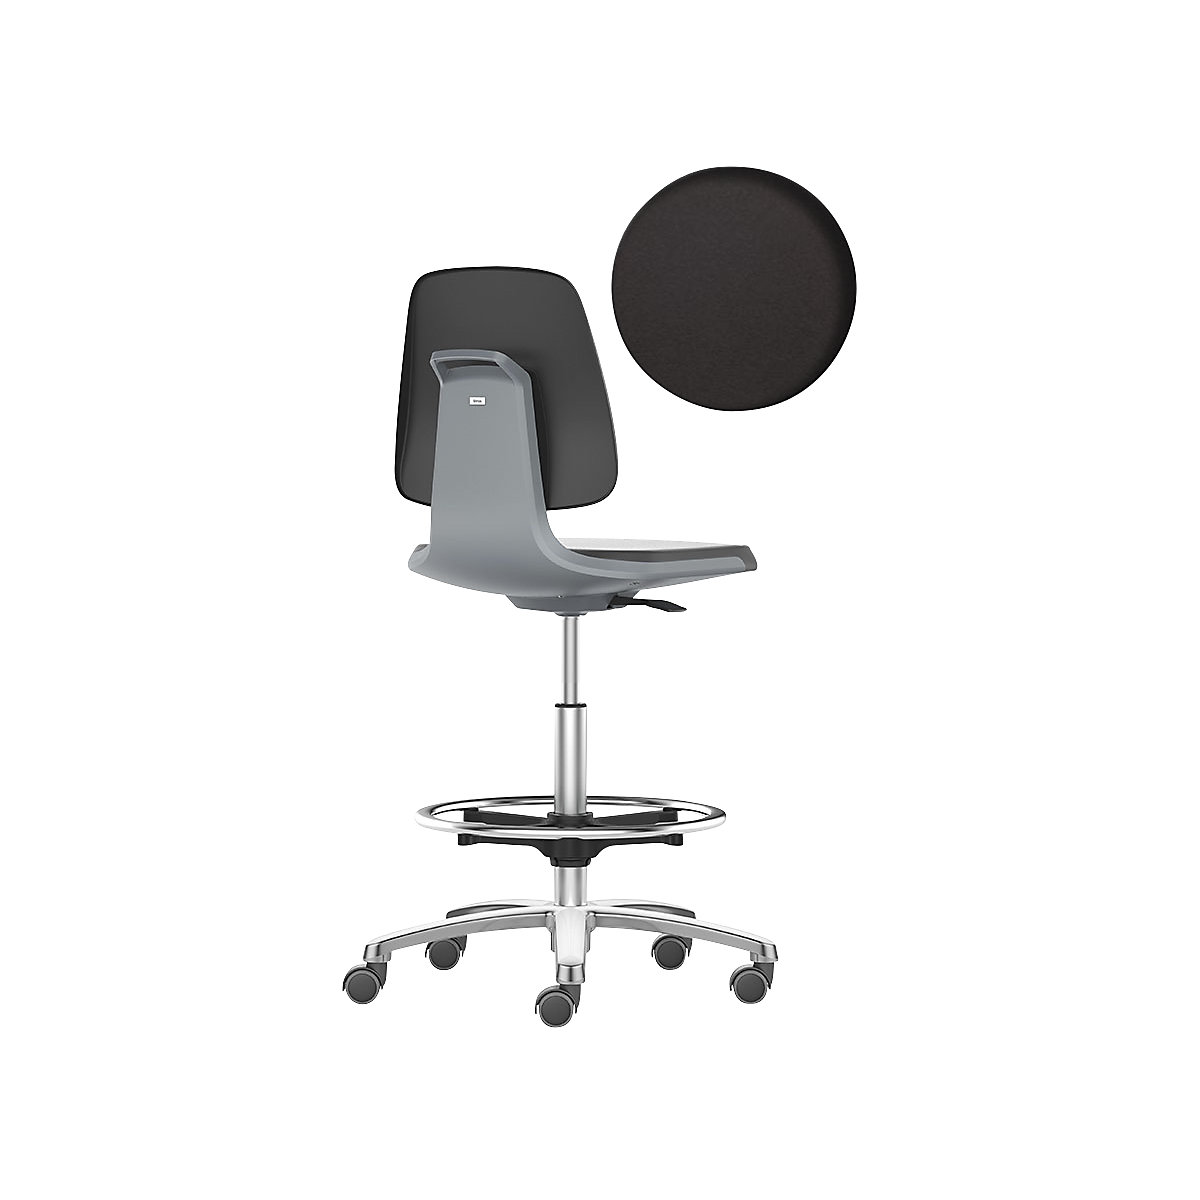 Obrotowe krzesło do pracy LABSIT – bimos, wysokie krzesło z rolkami hamującymi i podpórką na stopy, siedzisko z pianki PU, antracytowy-21